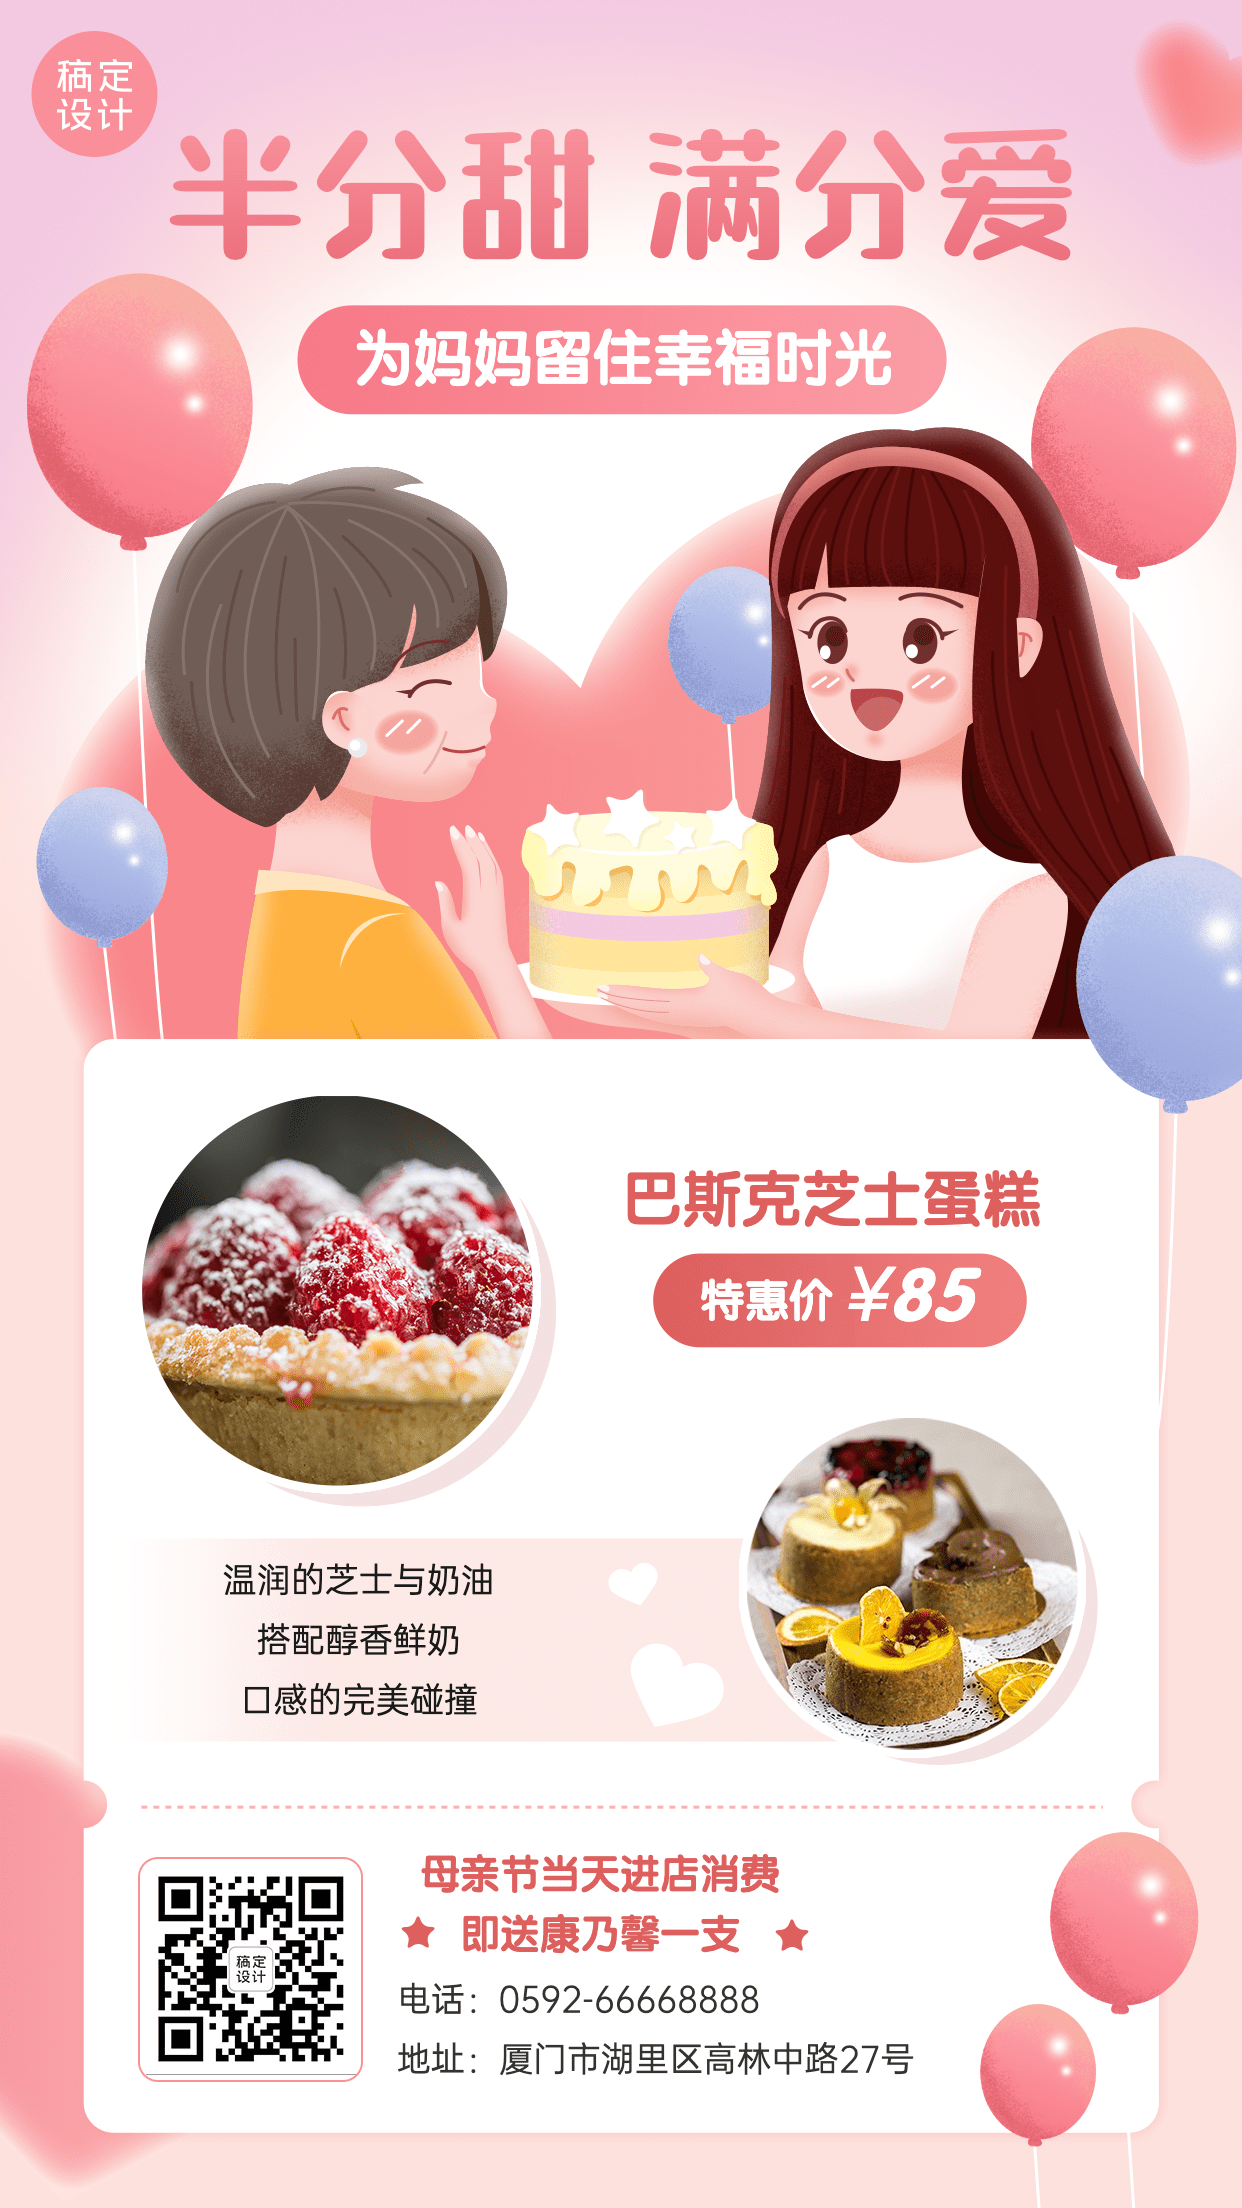 创意手绘风母亲节餐饮蛋糕烘焙营销手机海报